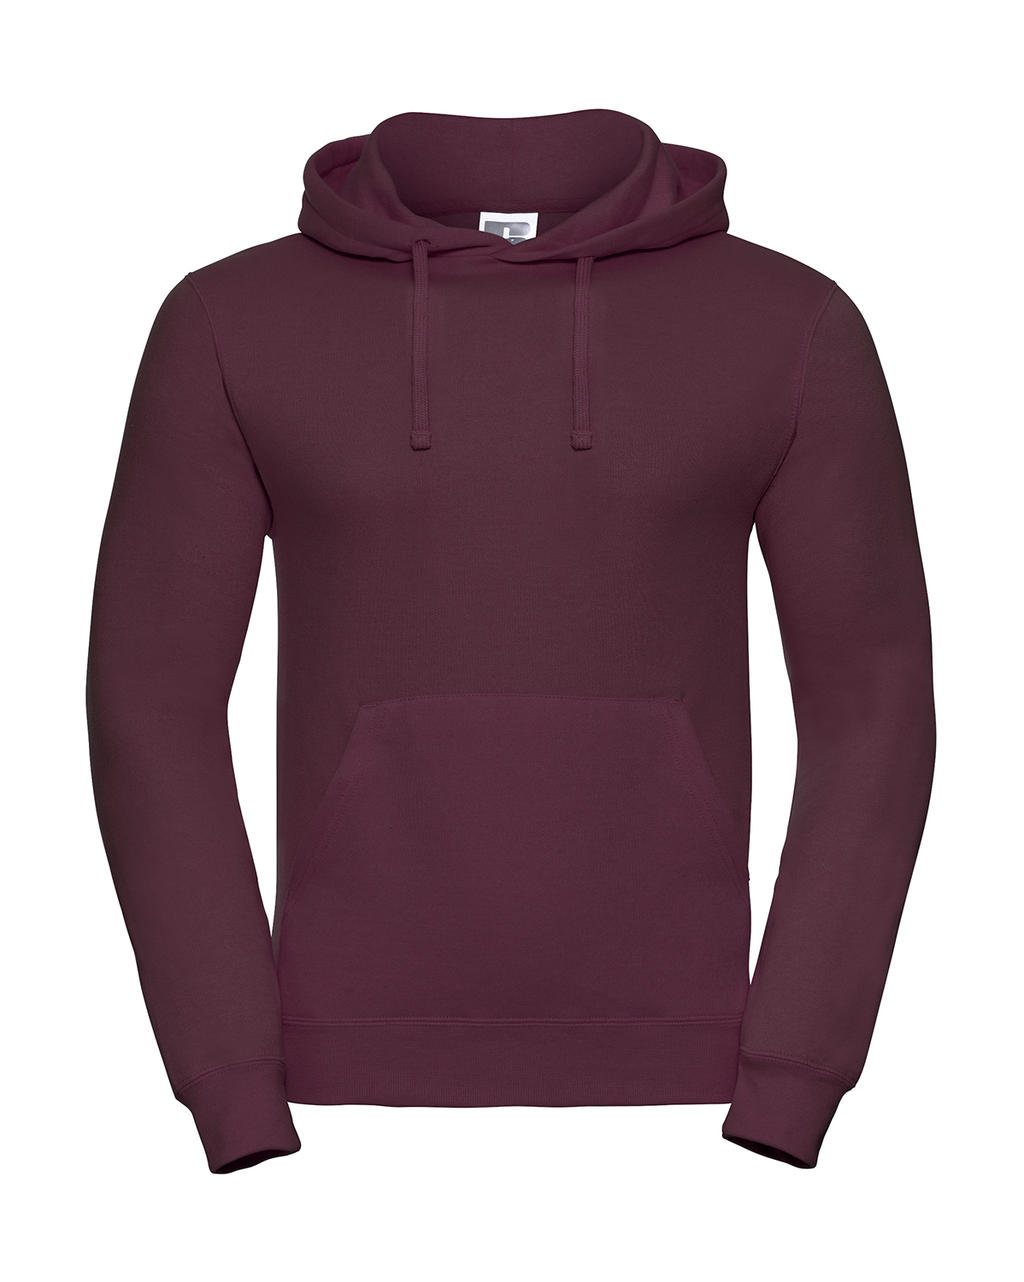  Hooded Sweatshirt in Farbe Burgundy